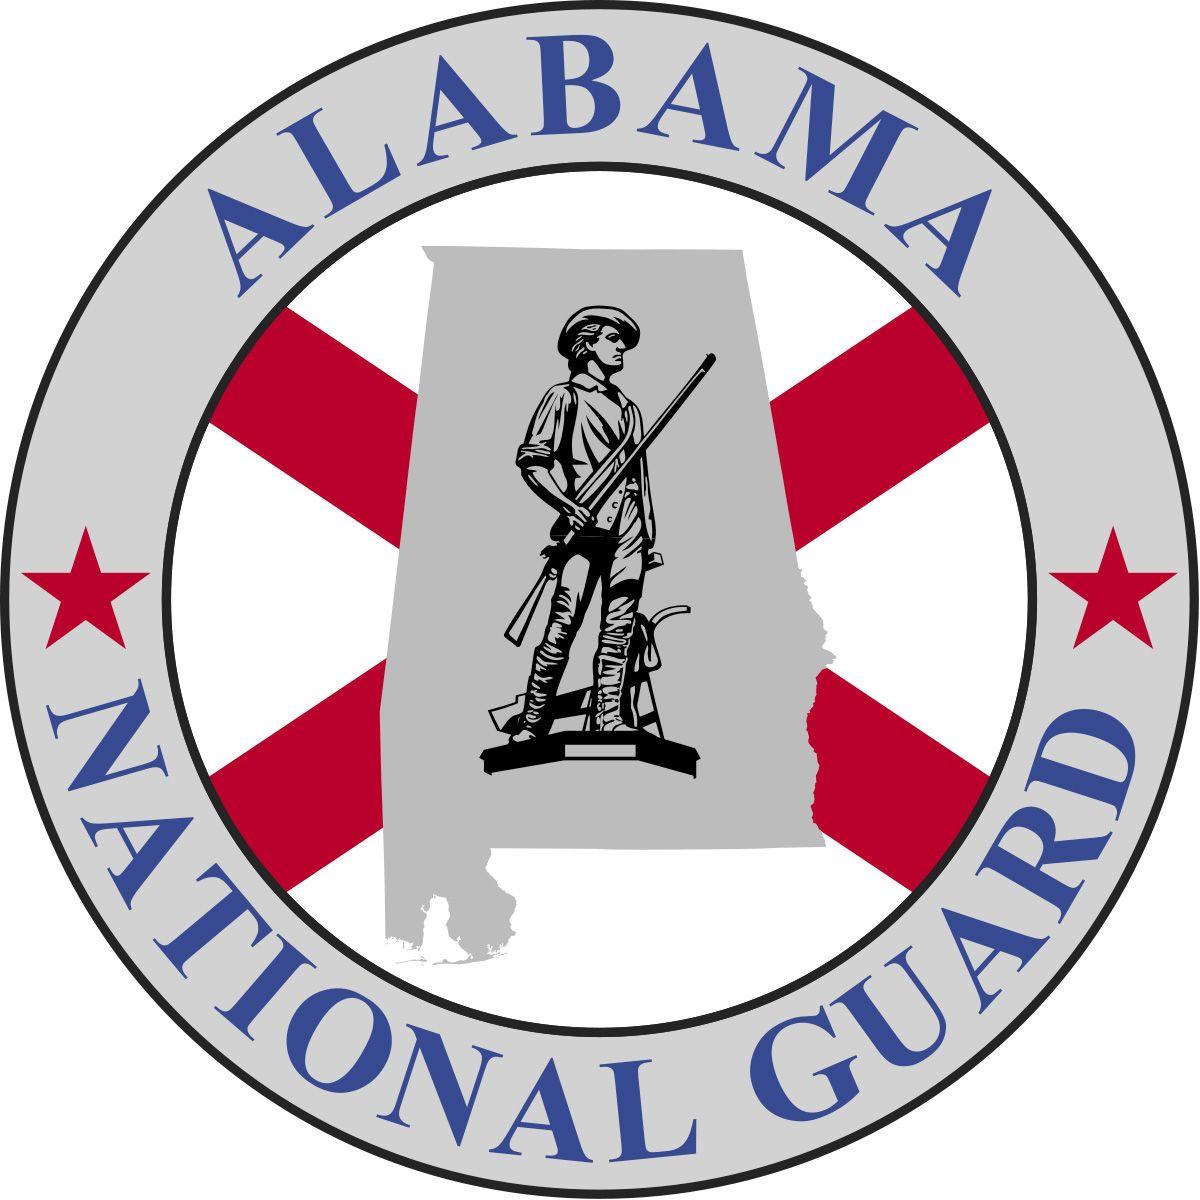 Alabama's Logo - Alabama National Guard. Encyclopedia of Alabama